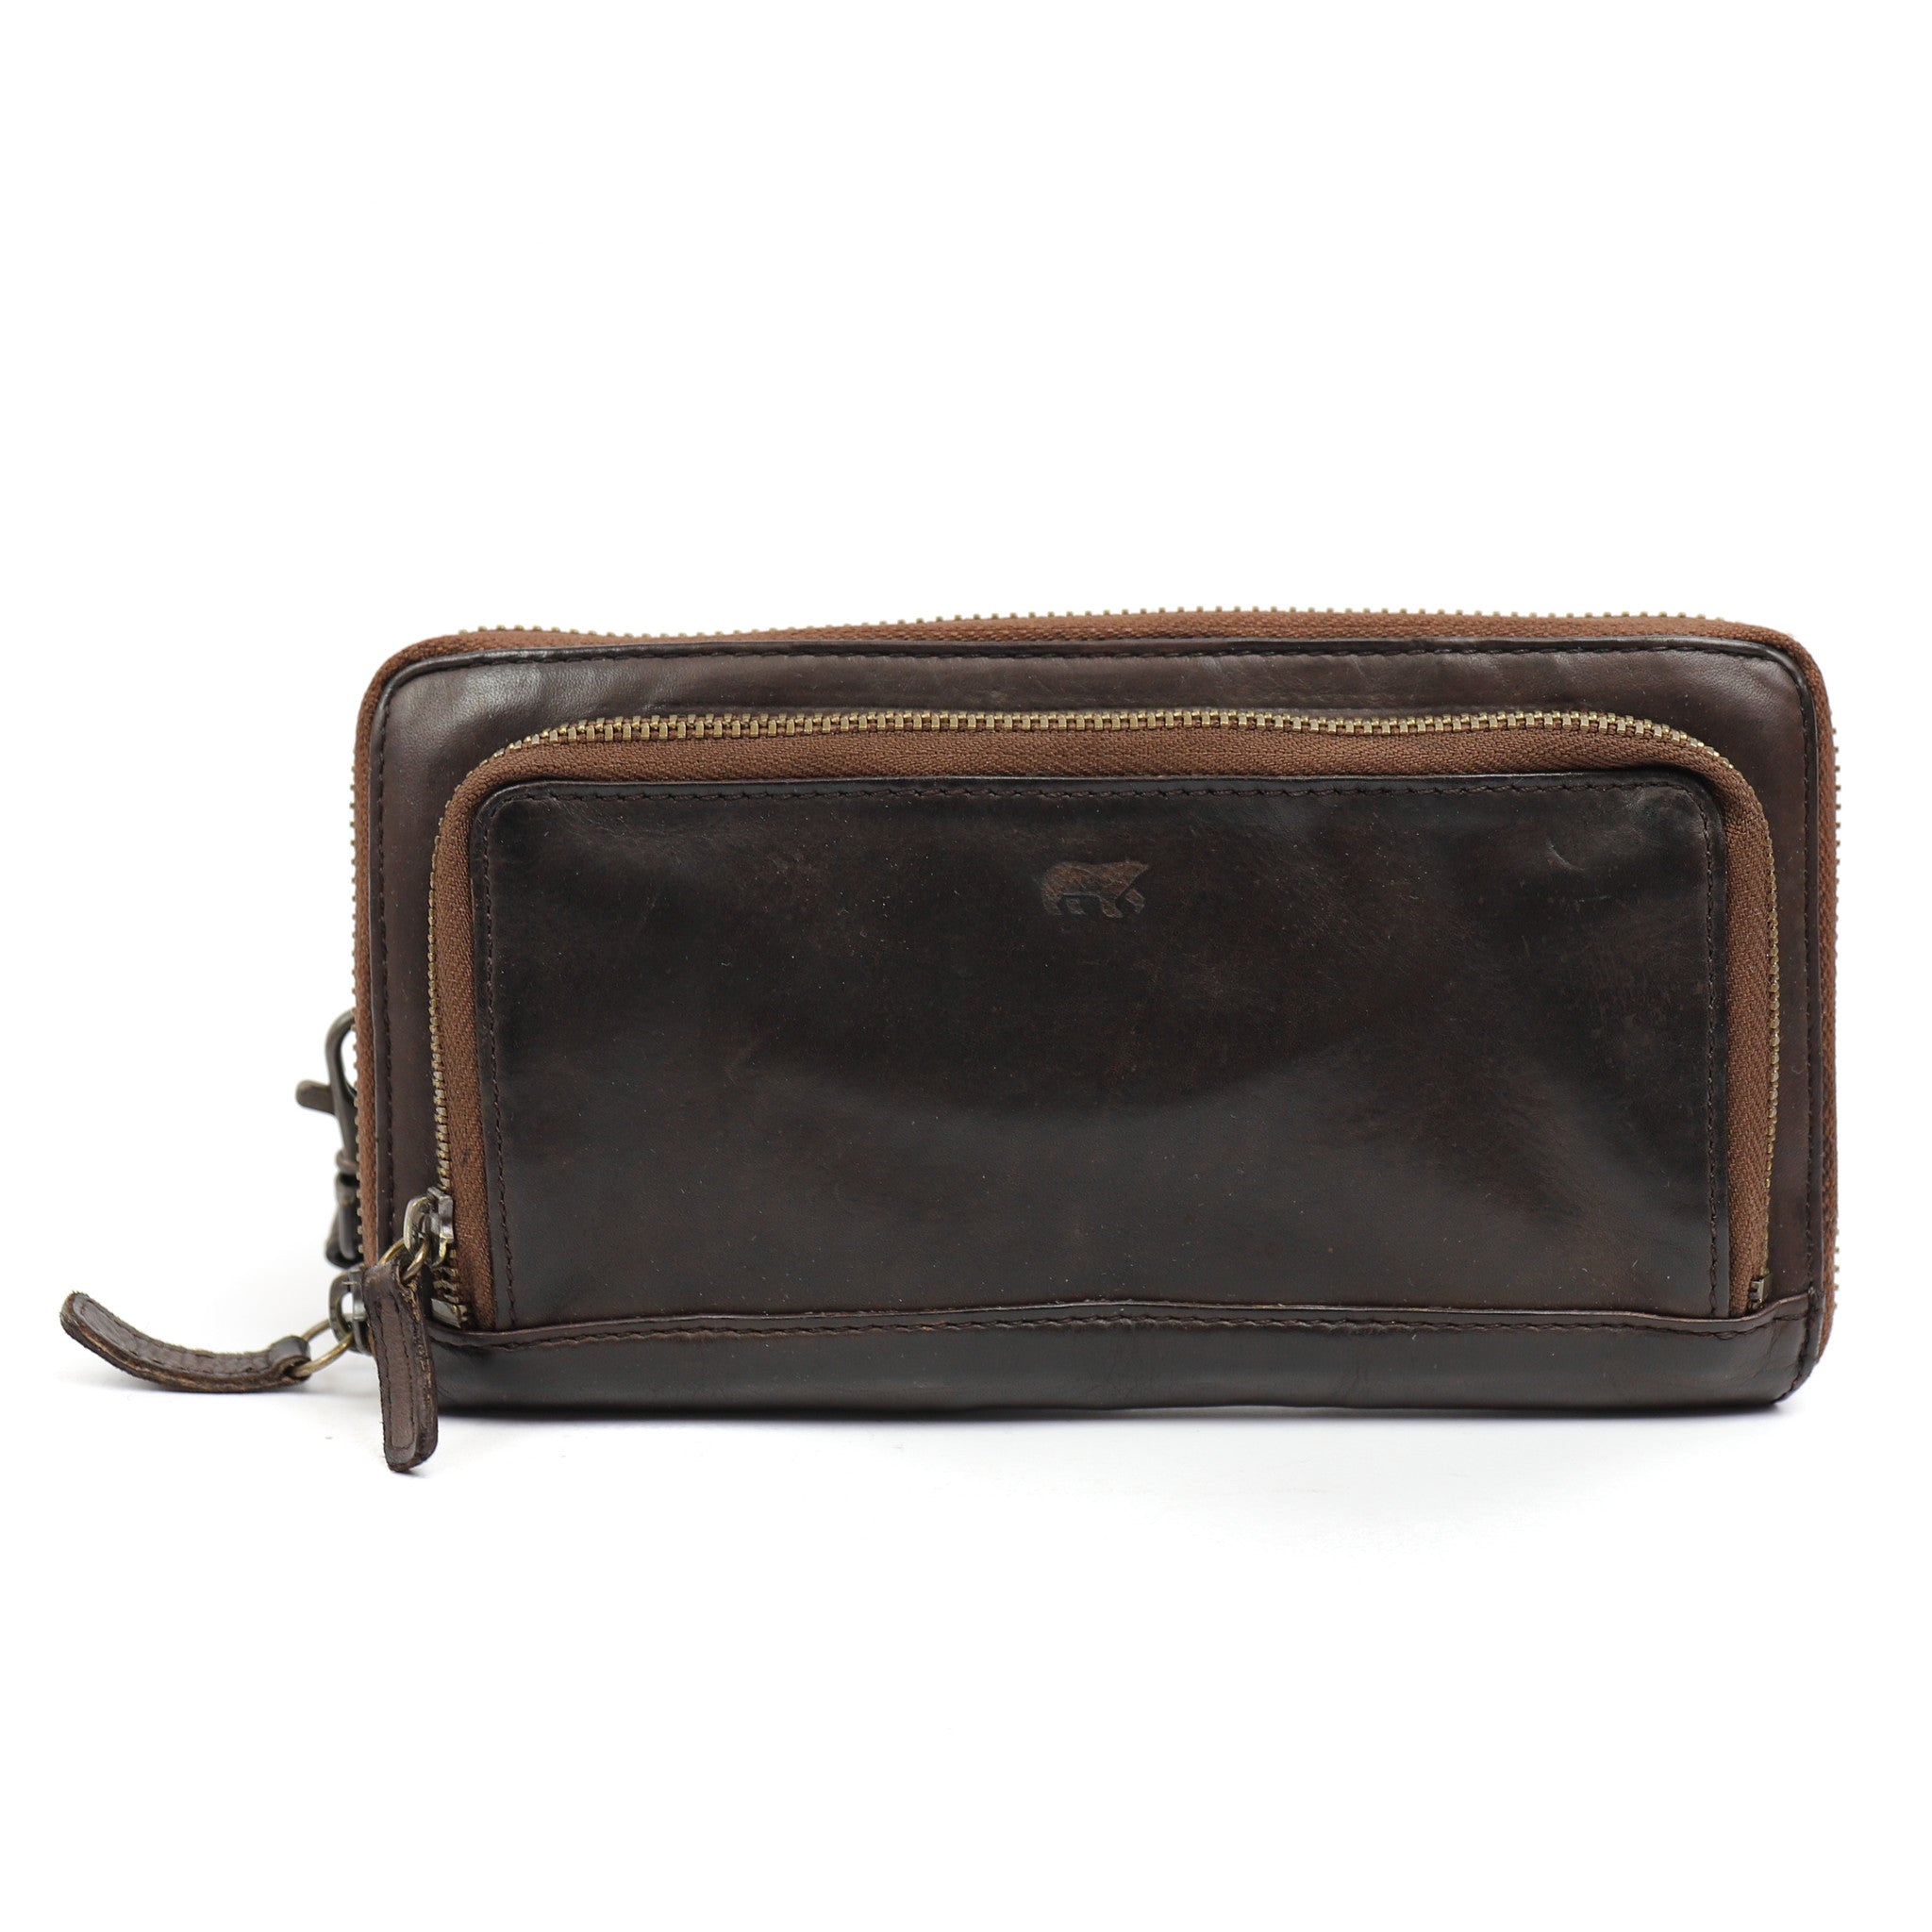 Zipper wallet 'Isa' dark brown - CL 14851